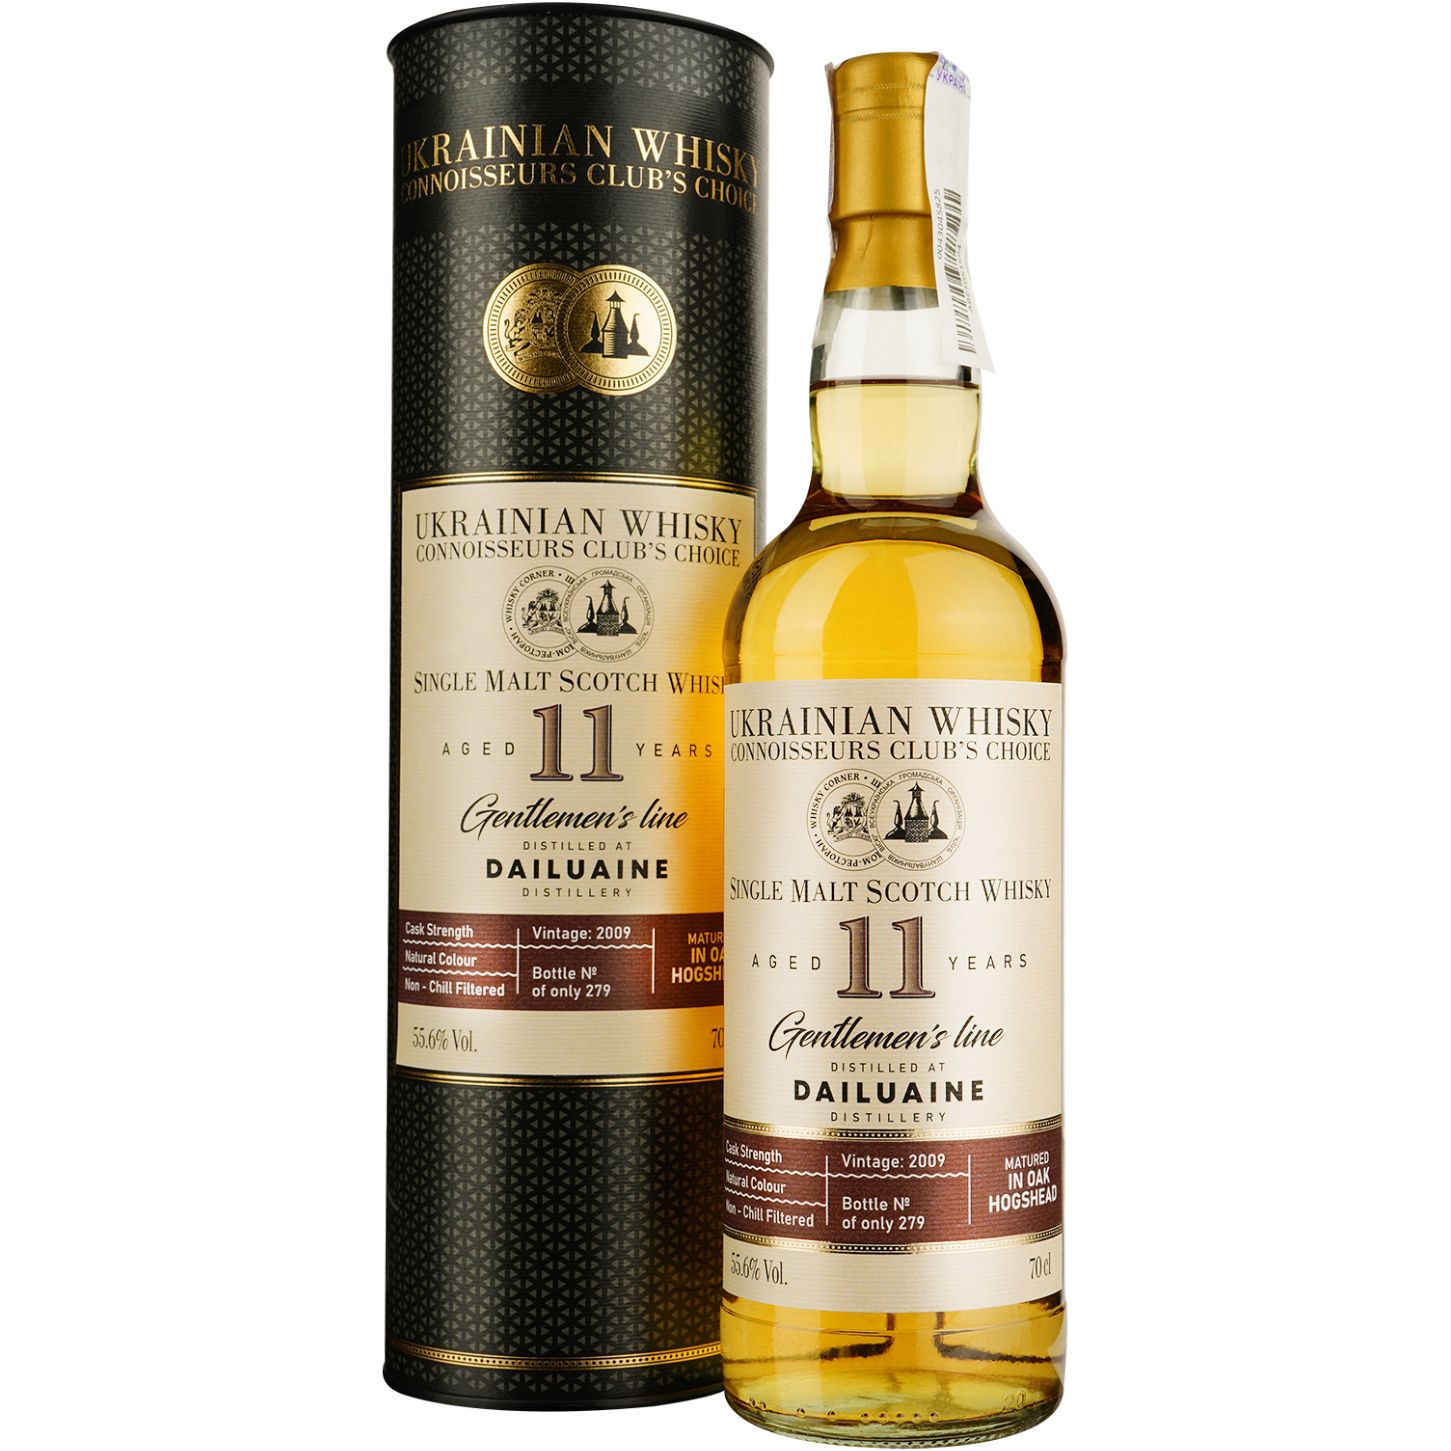 Віскі Dailuaine 11 Years Old Single Malt Scotch Whisky, у подарунковій упаковці, 55,6%, 0,7 л - фото 1